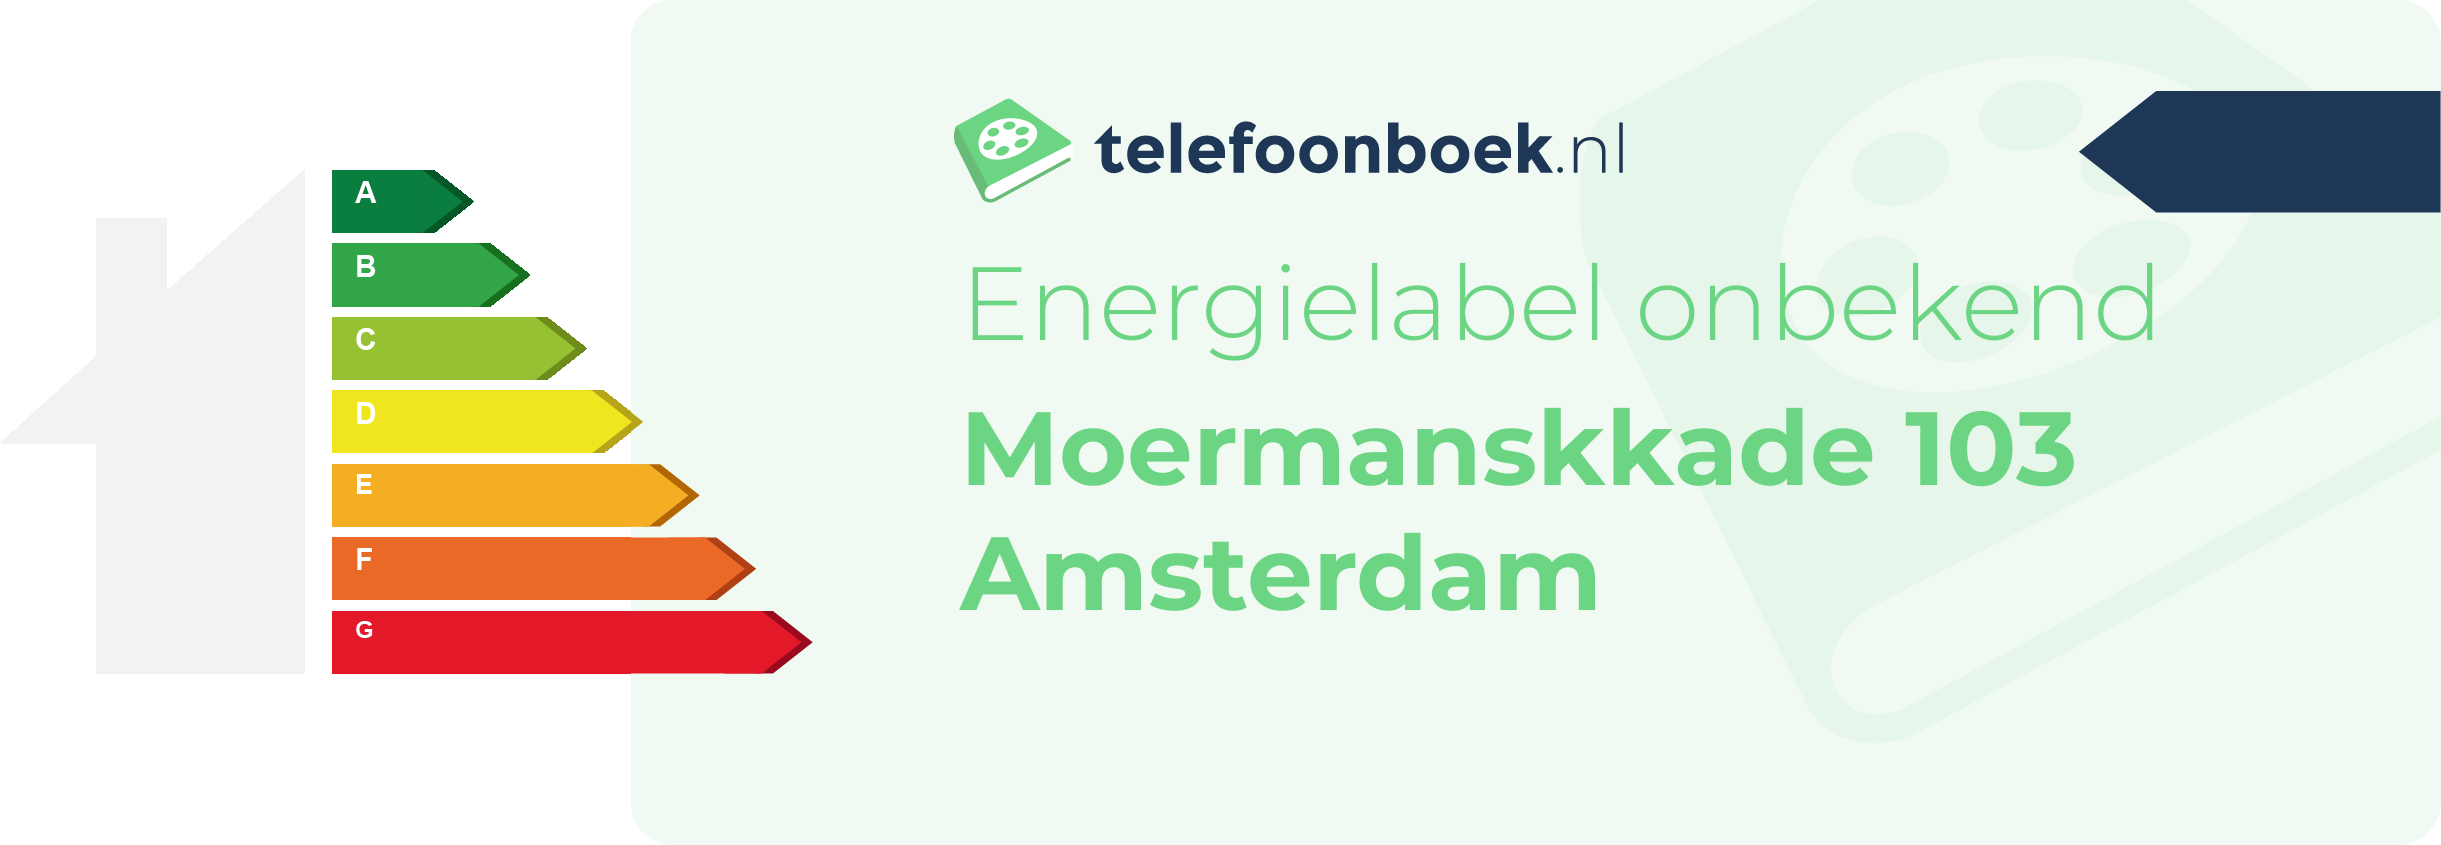 Energielabel Moermanskkade 103 Amsterdam